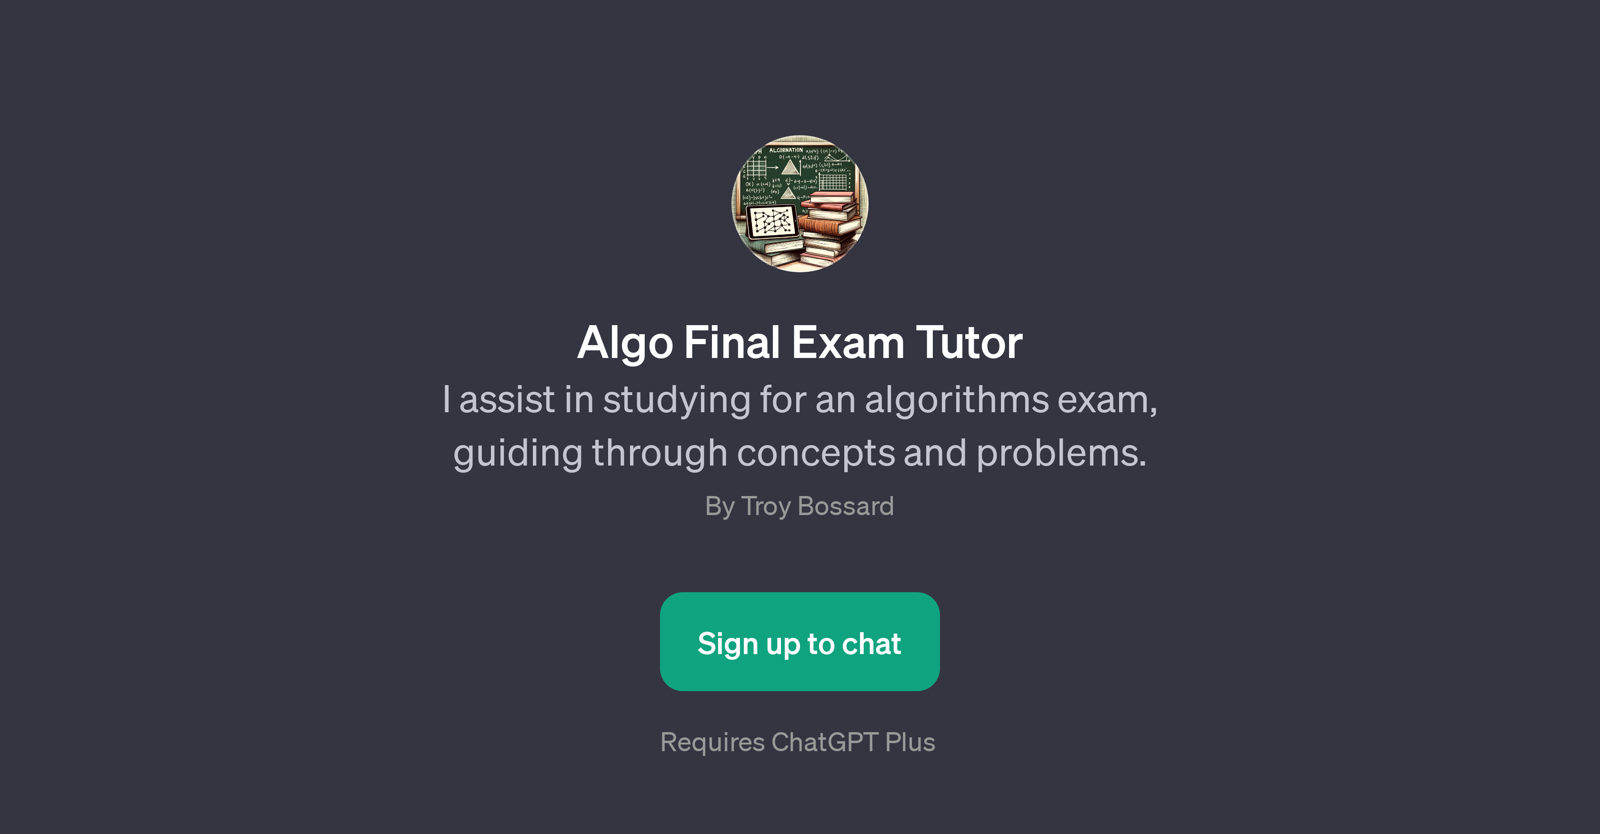 Algo Final Exam Tutor website